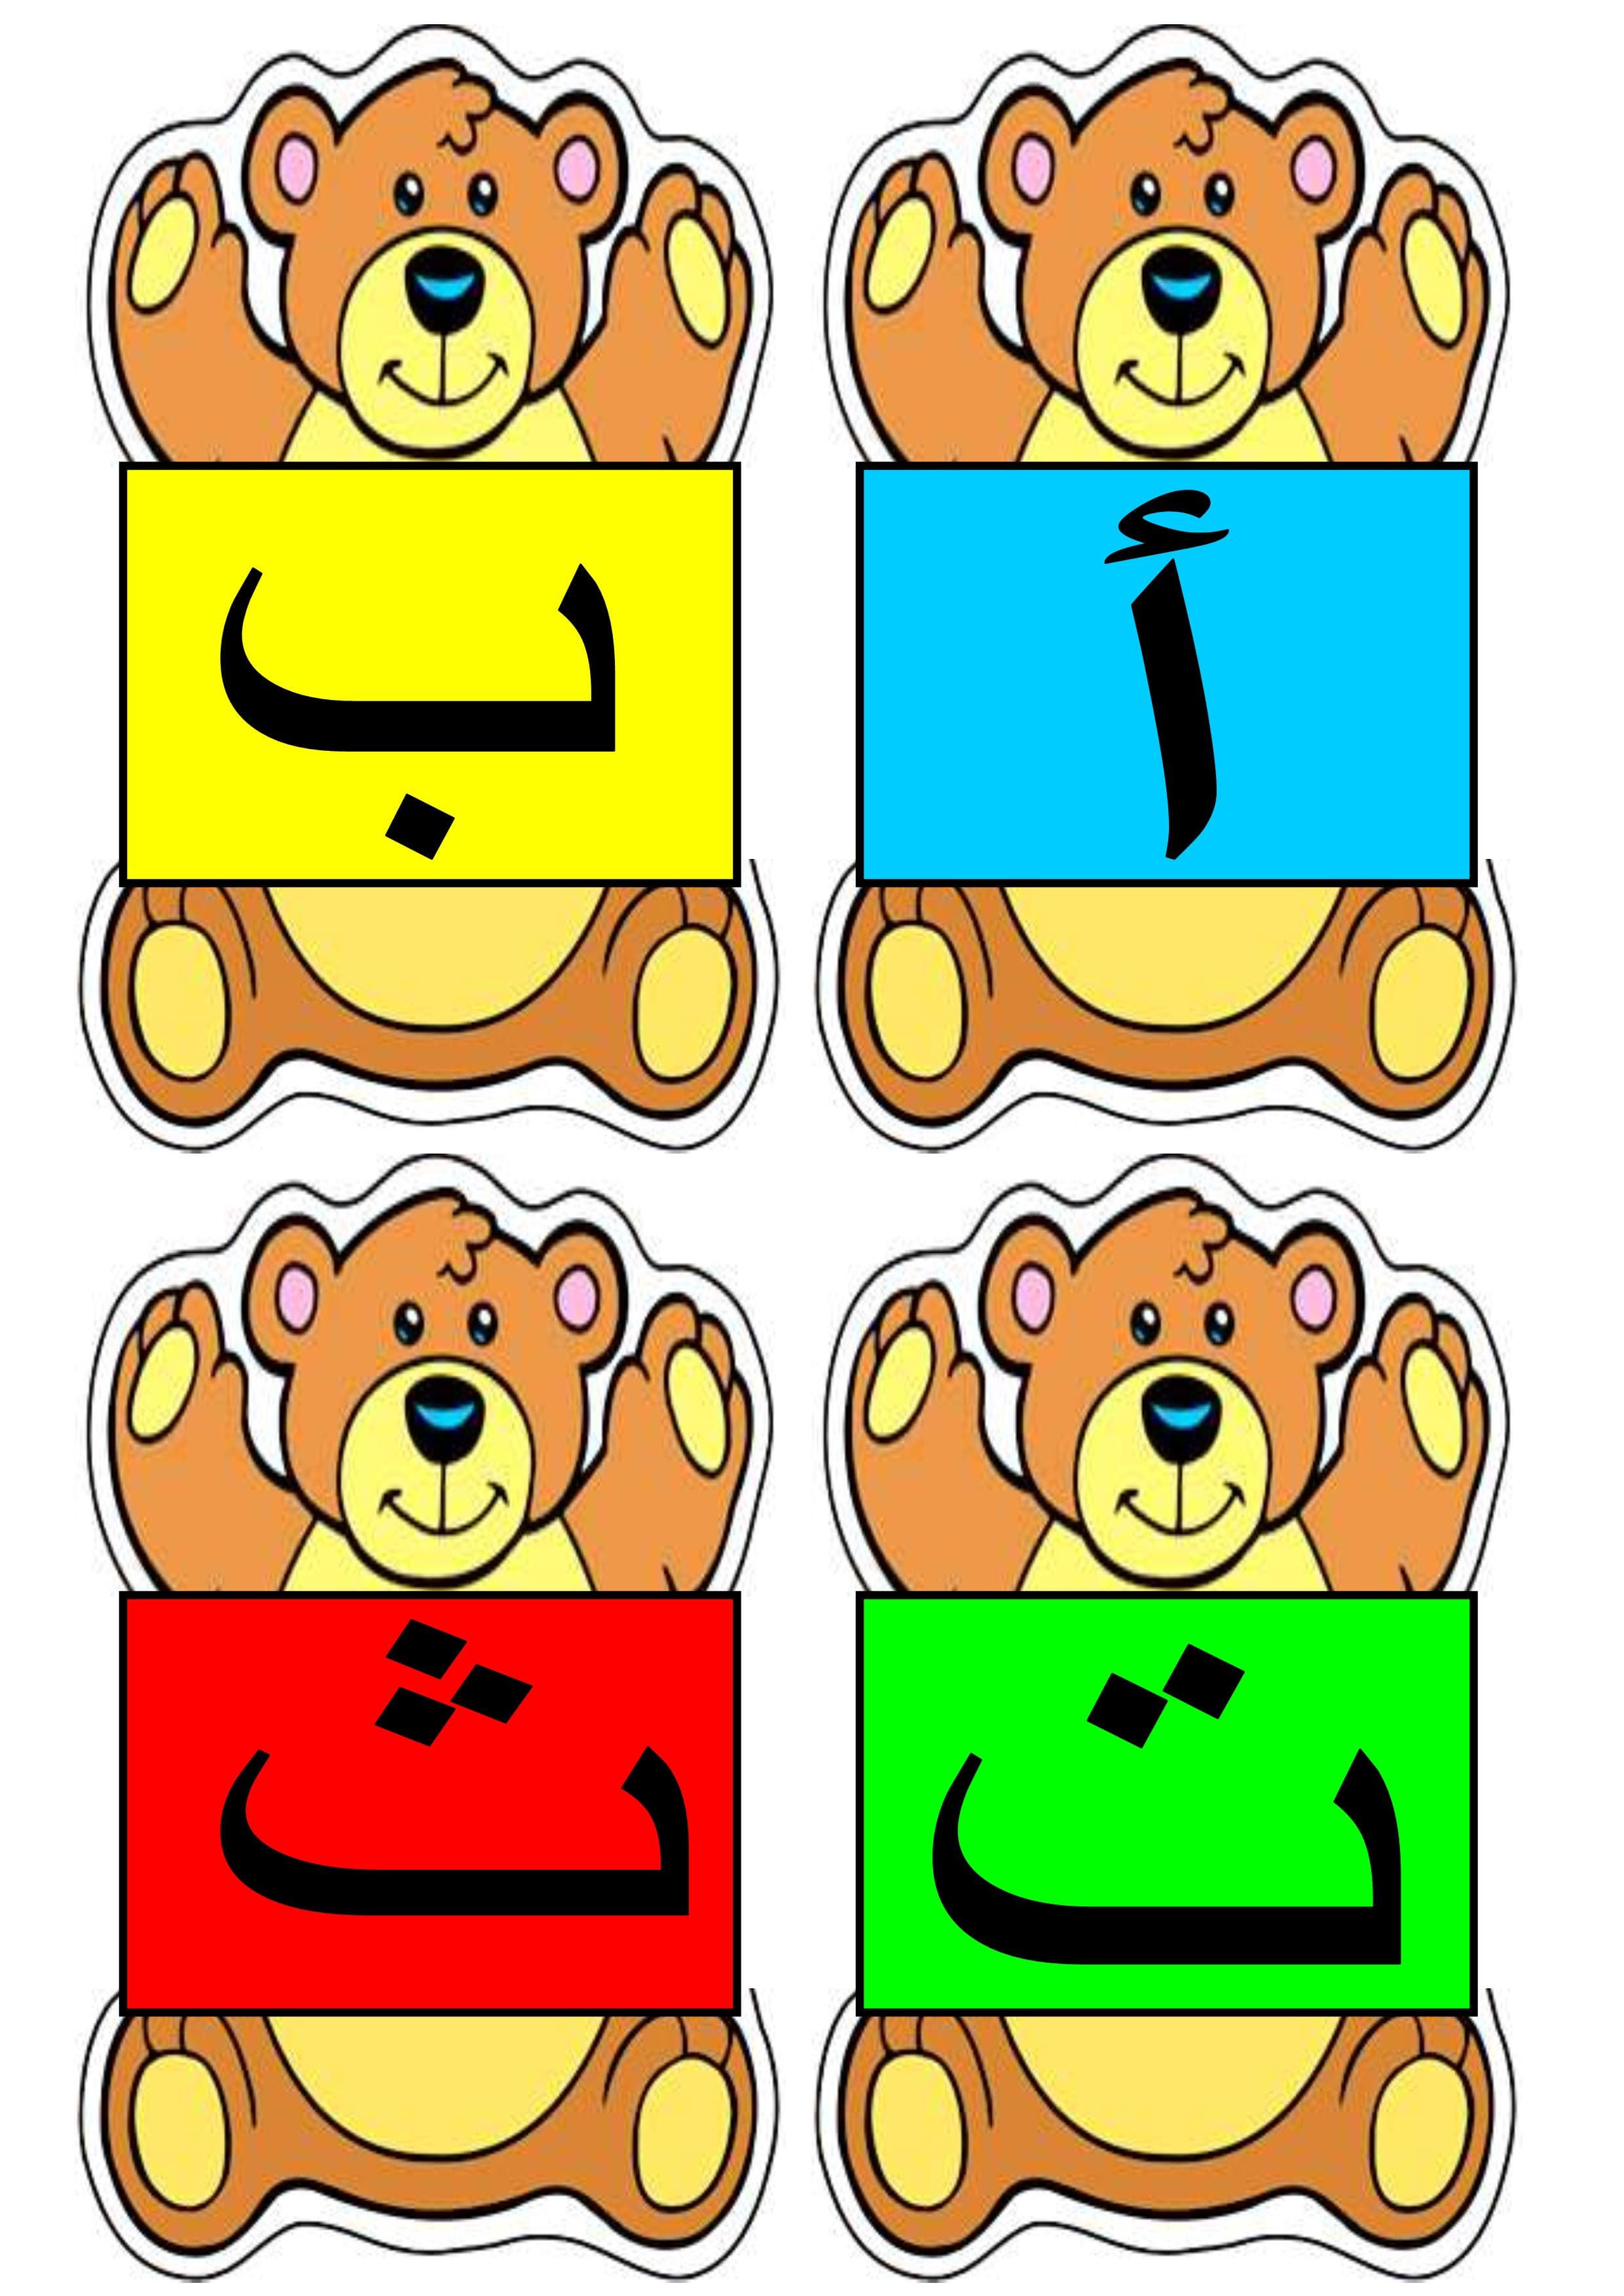 بطاقات الحروف الدبدوب لتعليم الاطفال الحروف الهجائية